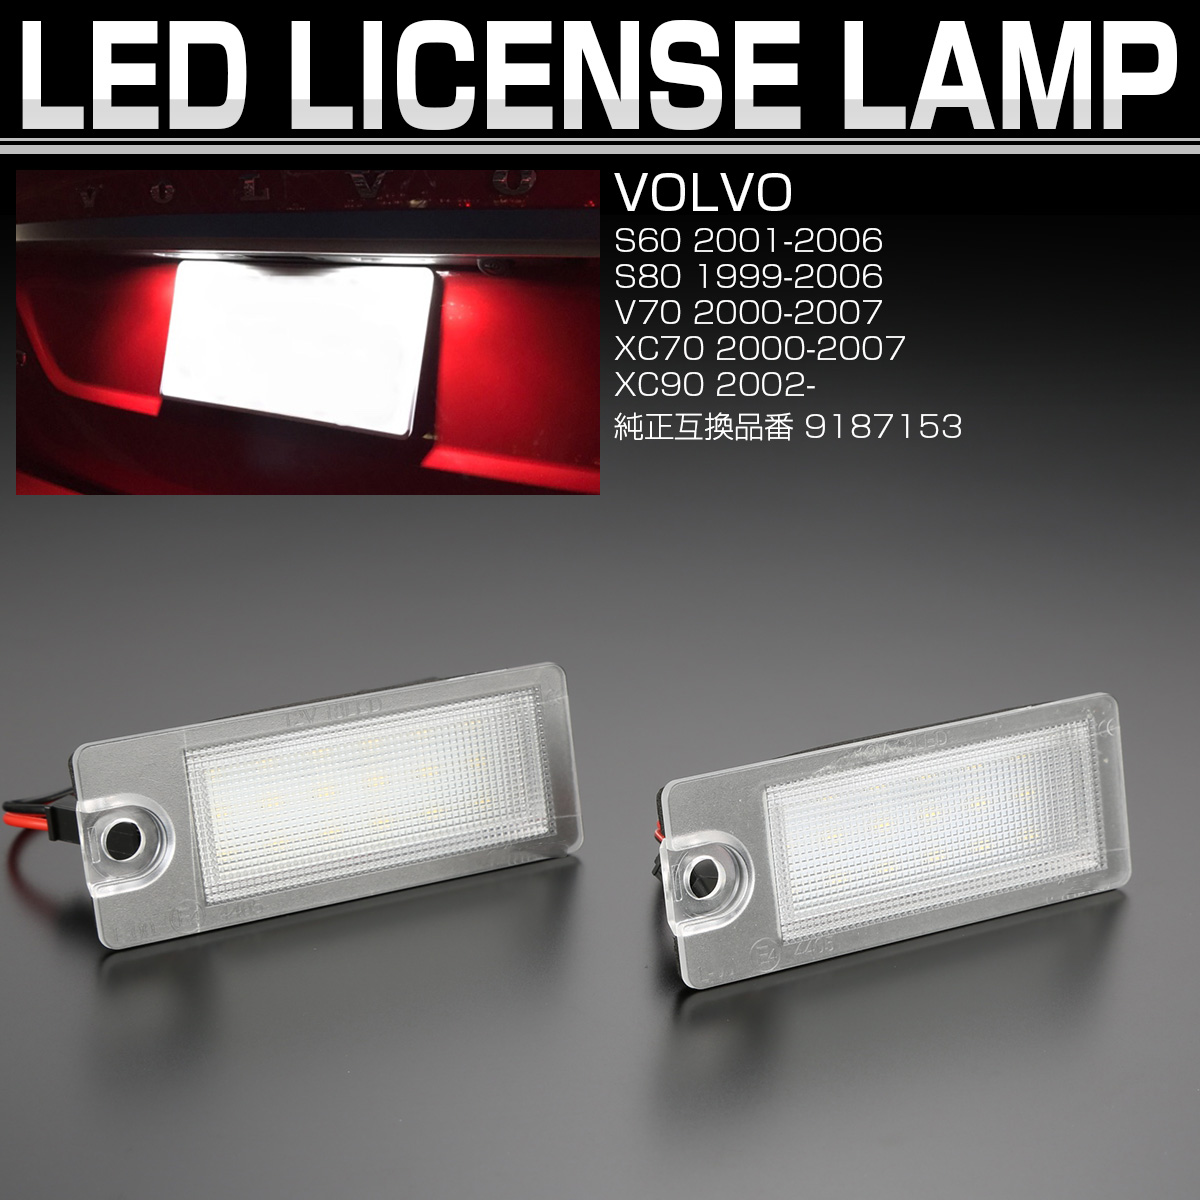 売れ筋 ライセンスランプ ボルボ V50 V60 LEDランプ ナンバー灯 3発